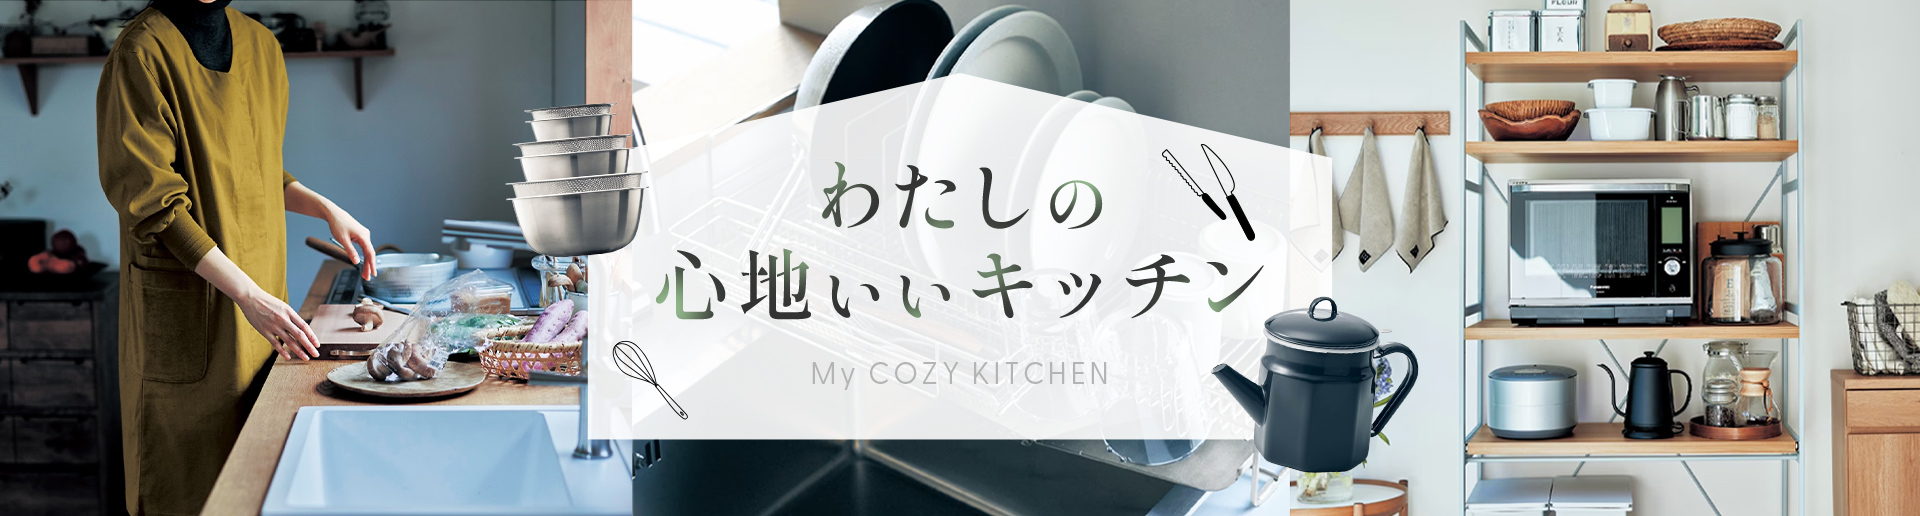 わたしの心地いいキッチン My COZY KITHEN